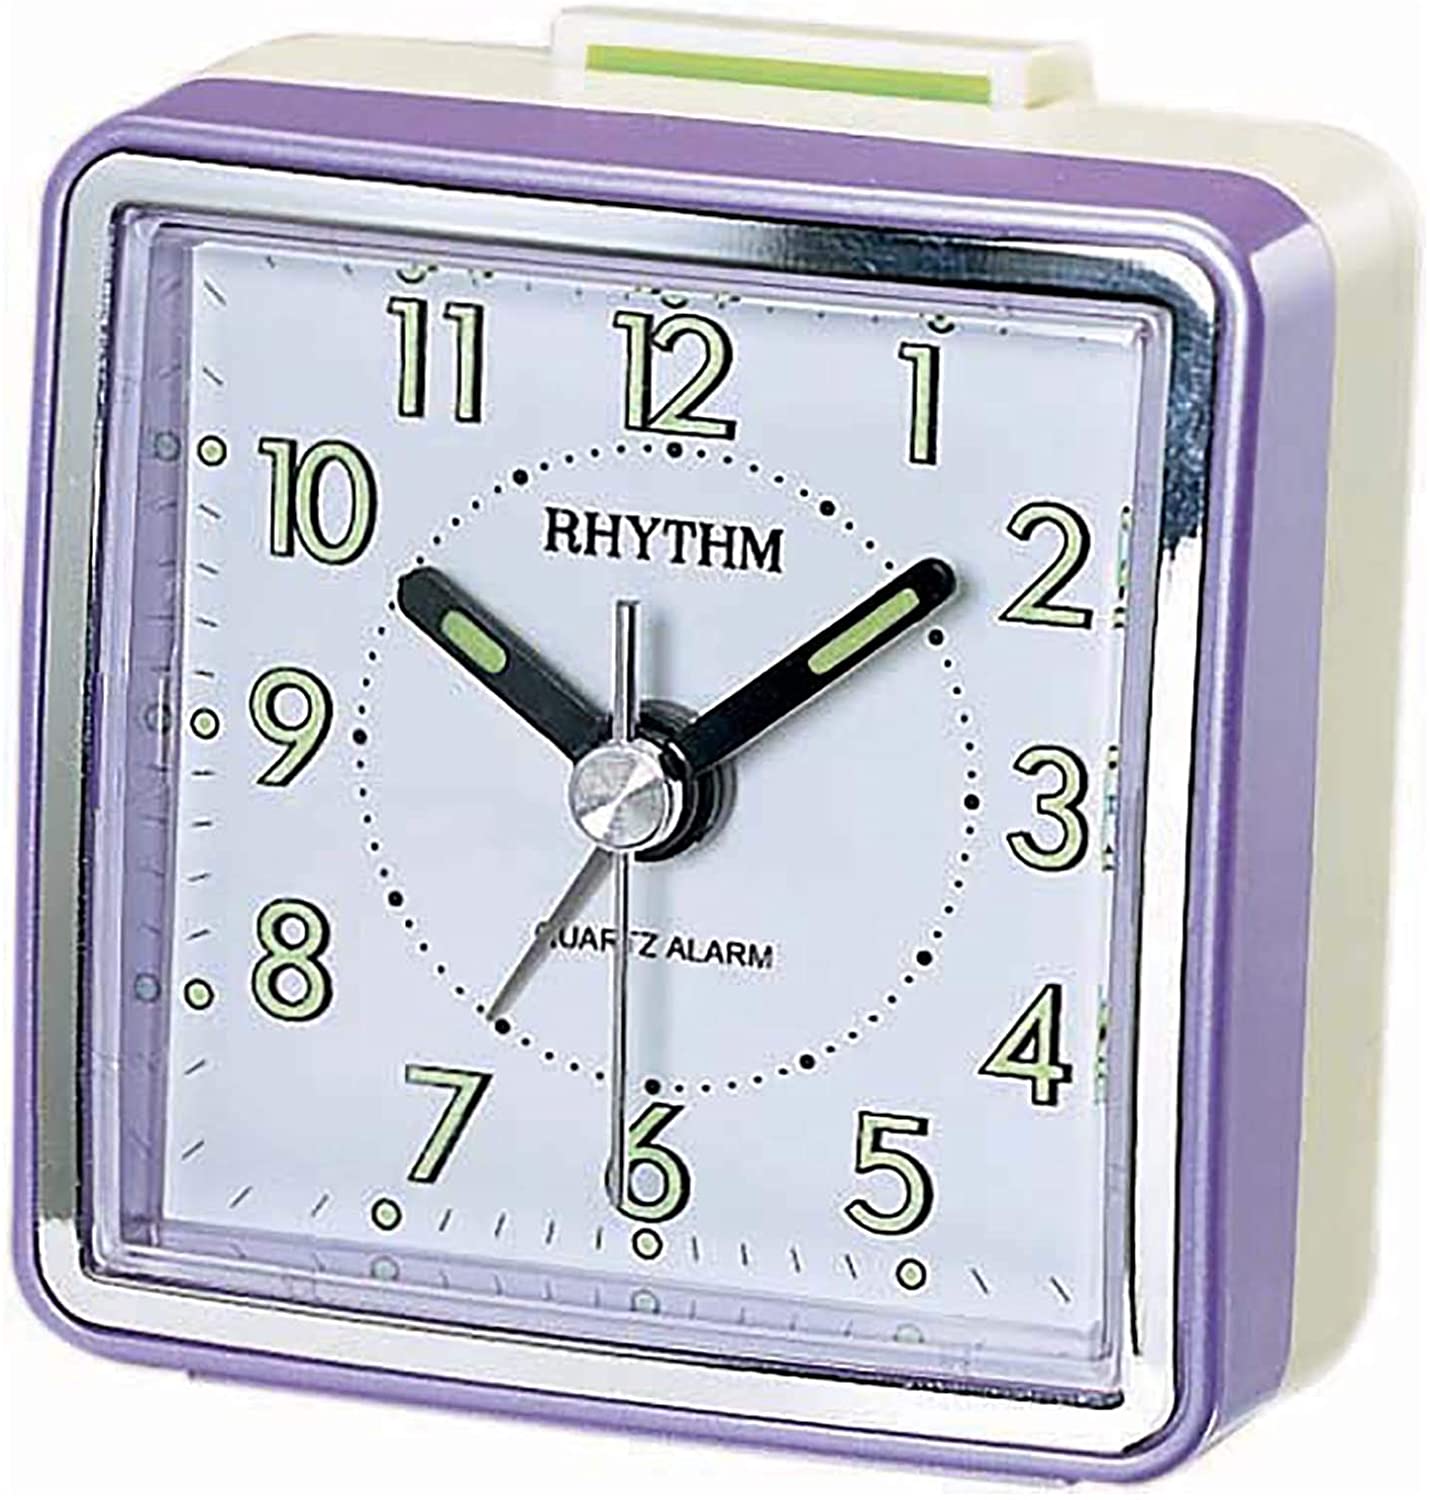 Rhythm Value Added Beep Alarm Table Clock